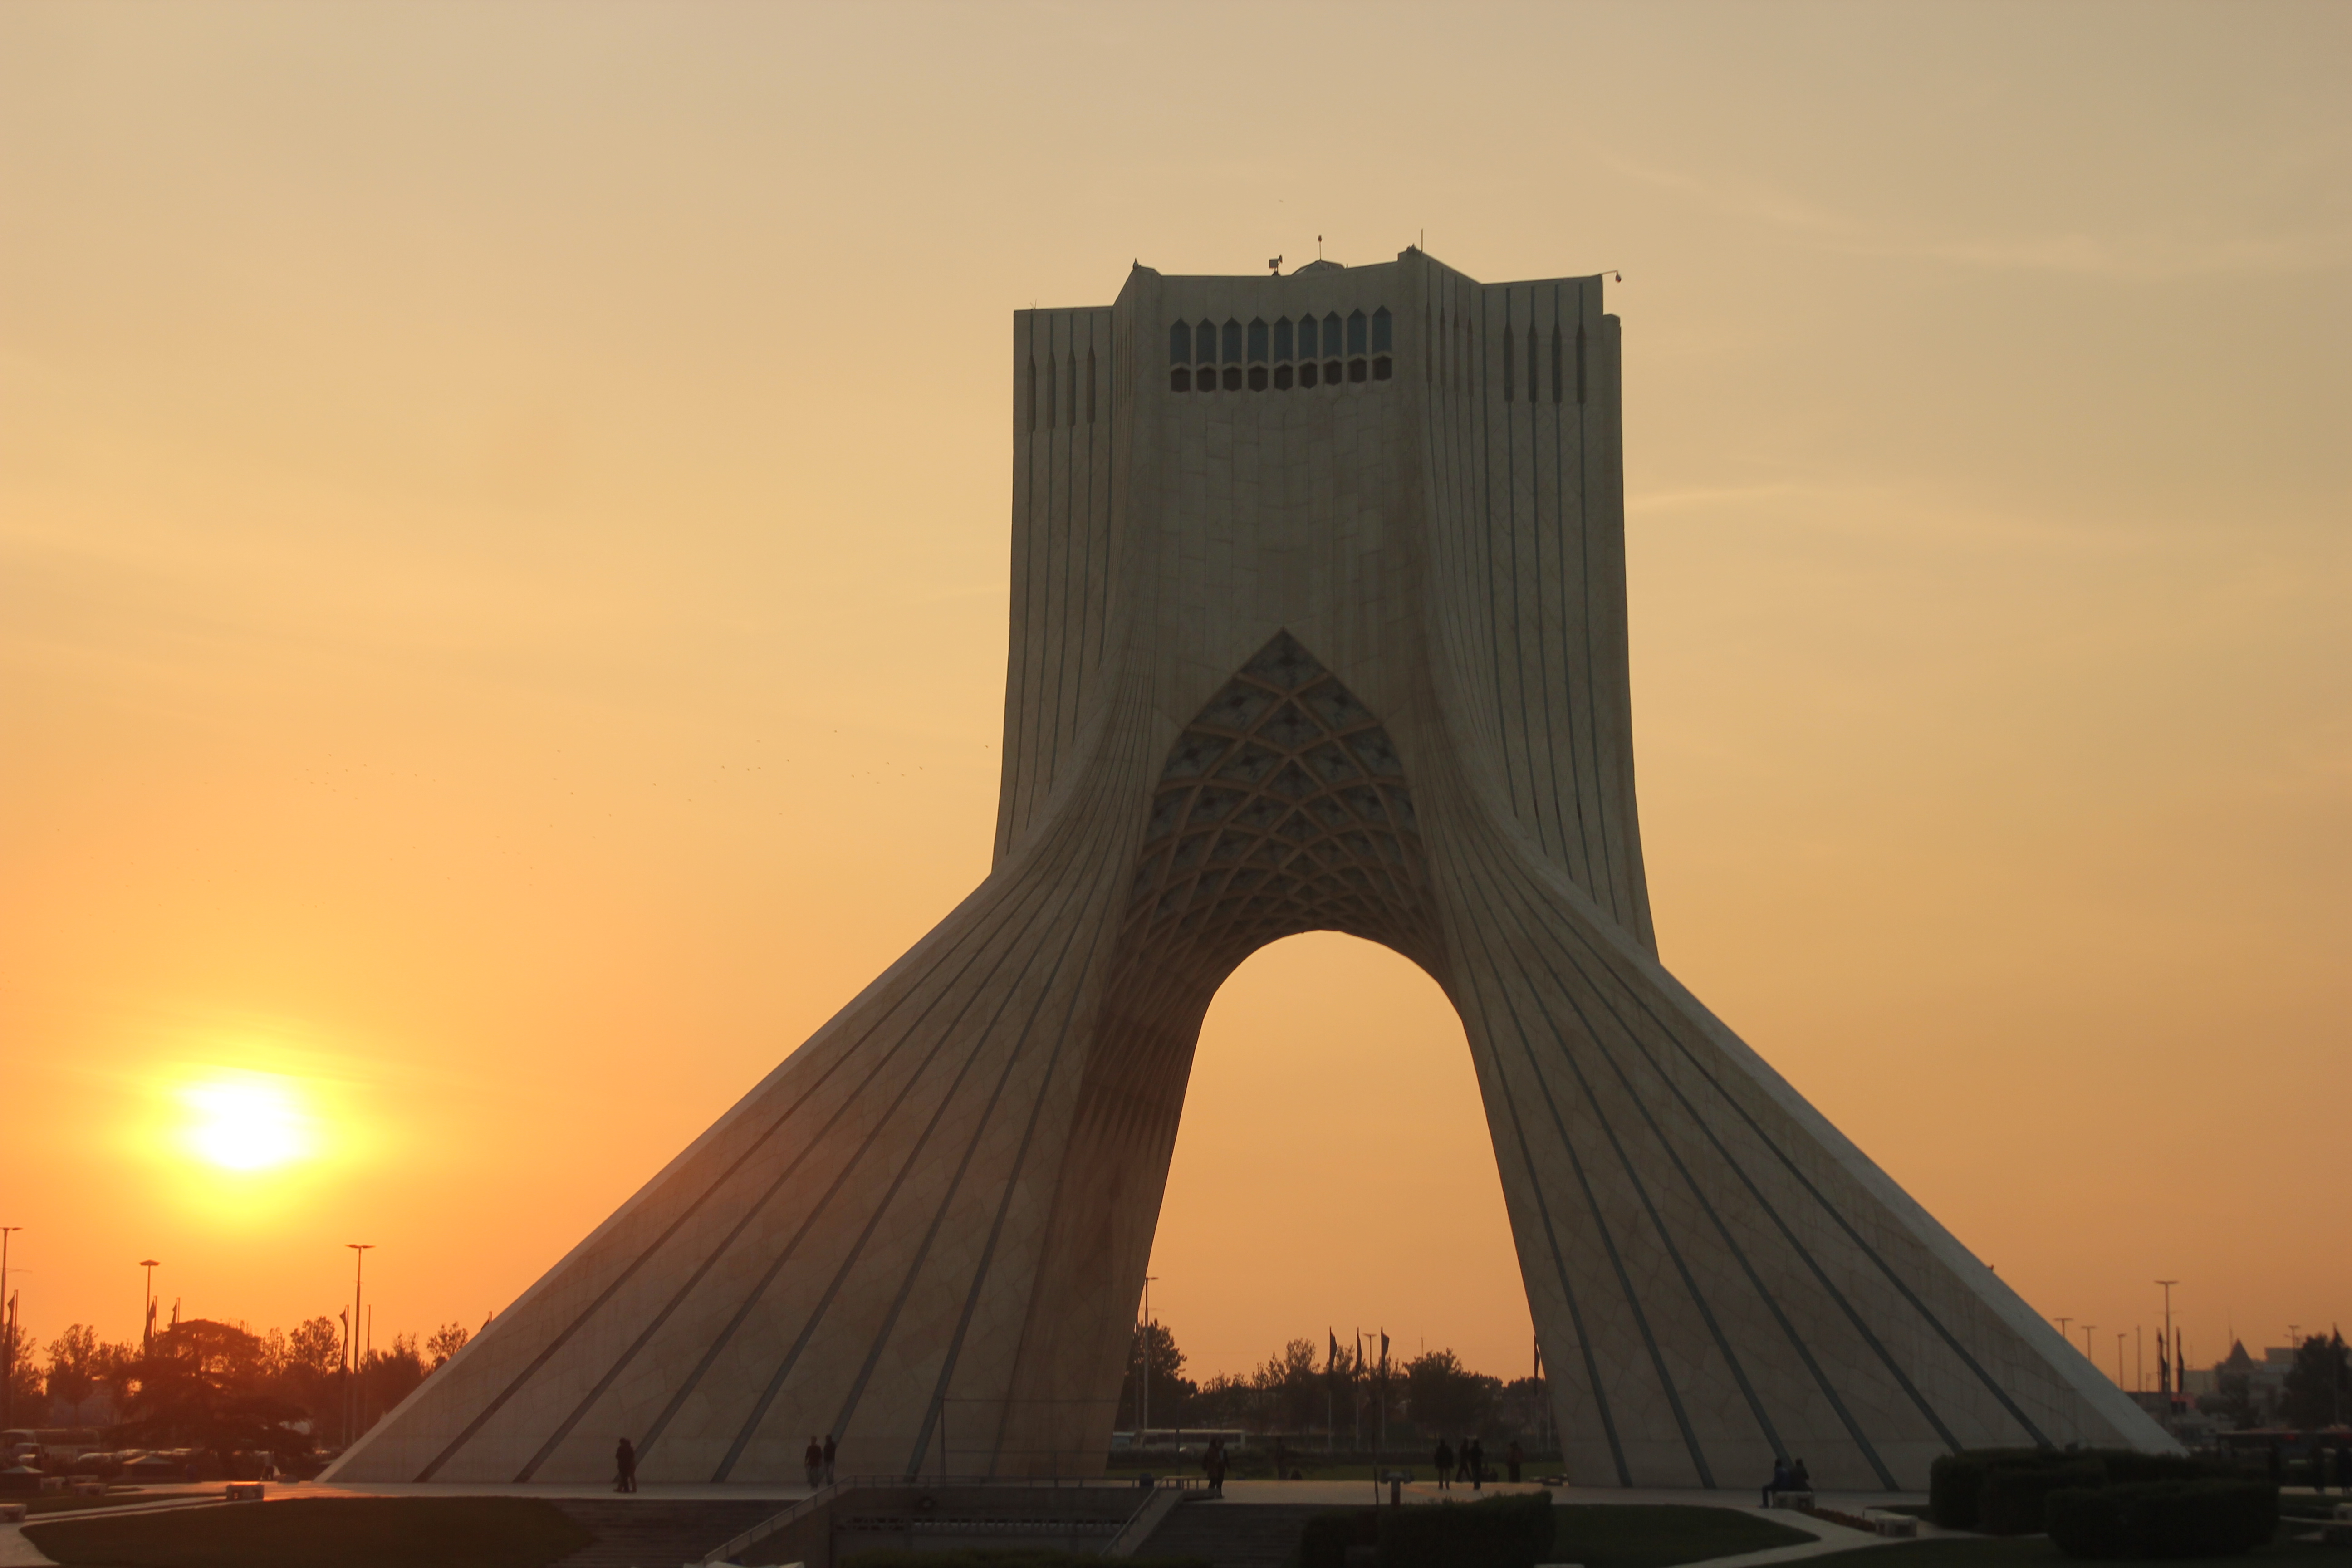 【携程攻略】德黑兰自由纪念塔景点,自由纪念塔于1971年10月落成,伊朗